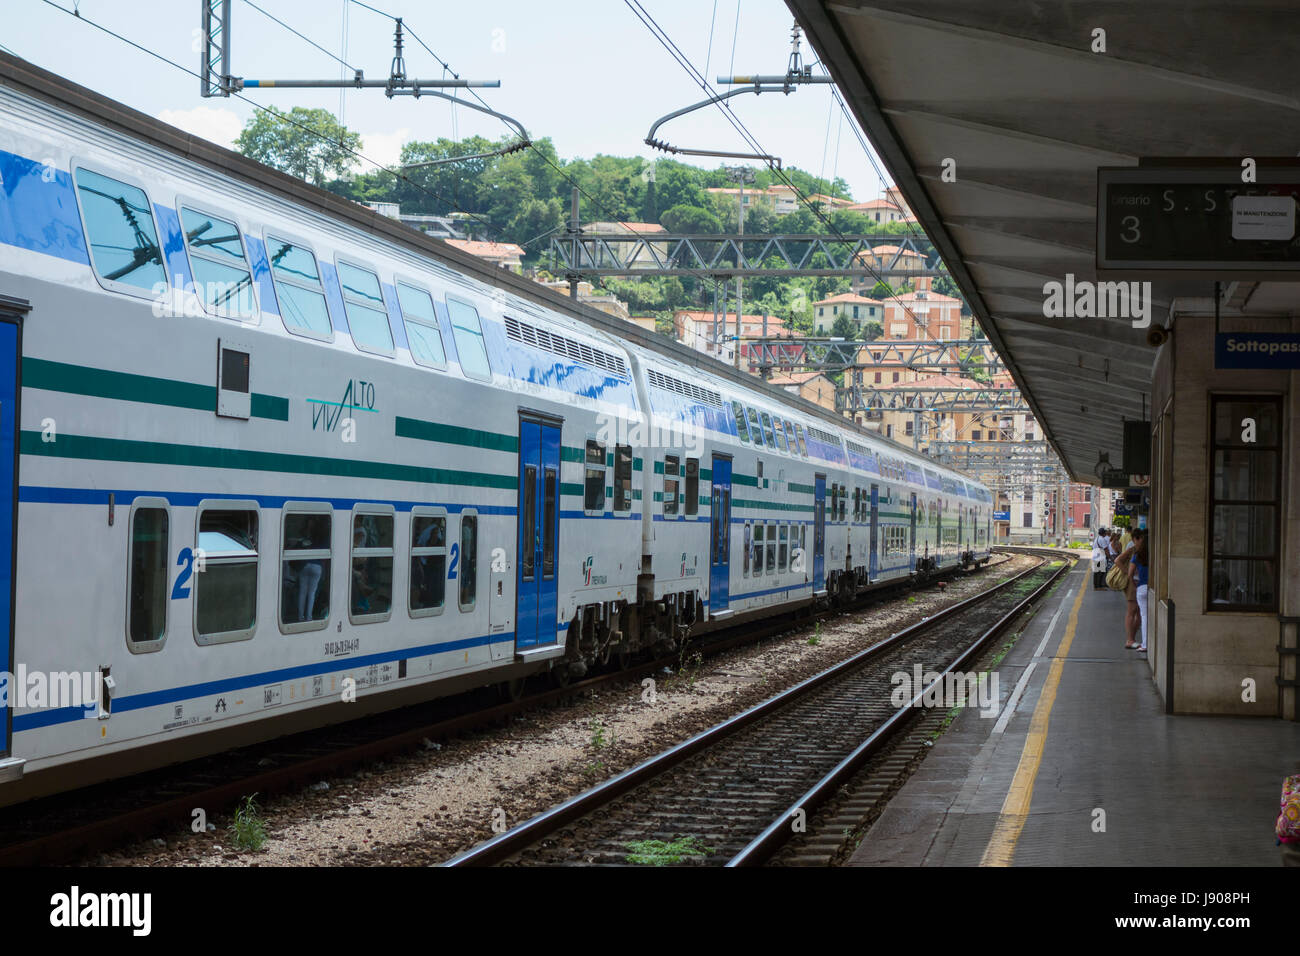 Trenitalia train, Italy Stock Photo